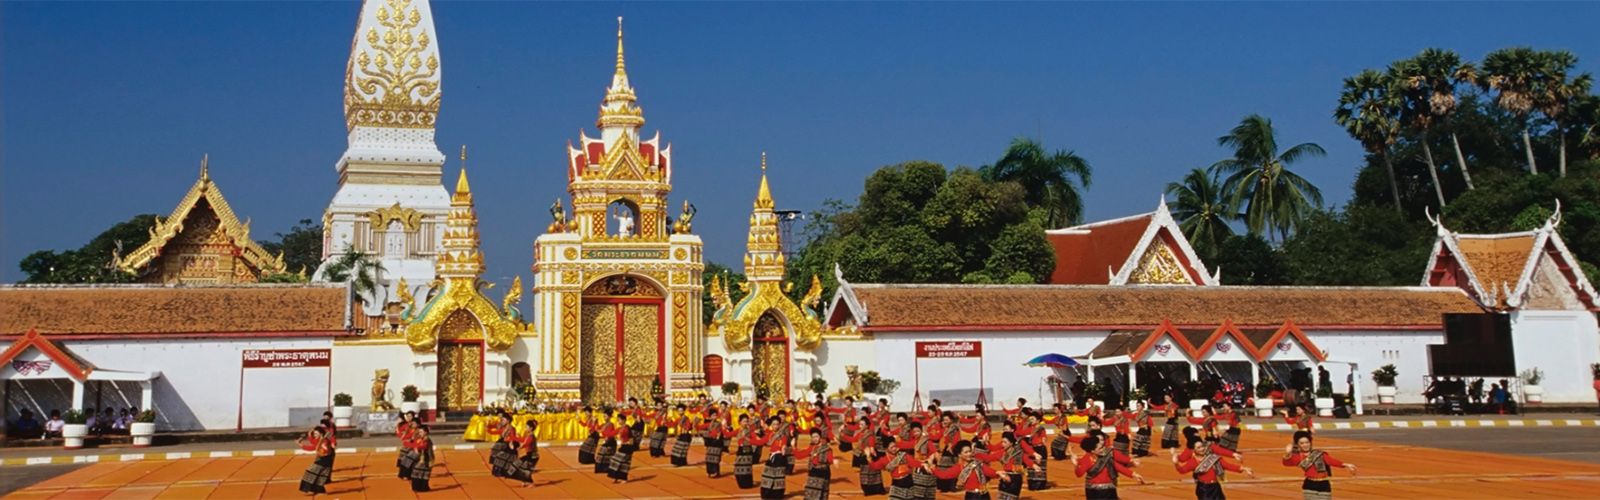 Nakhon Phanom Holidays | Asianventure Tours